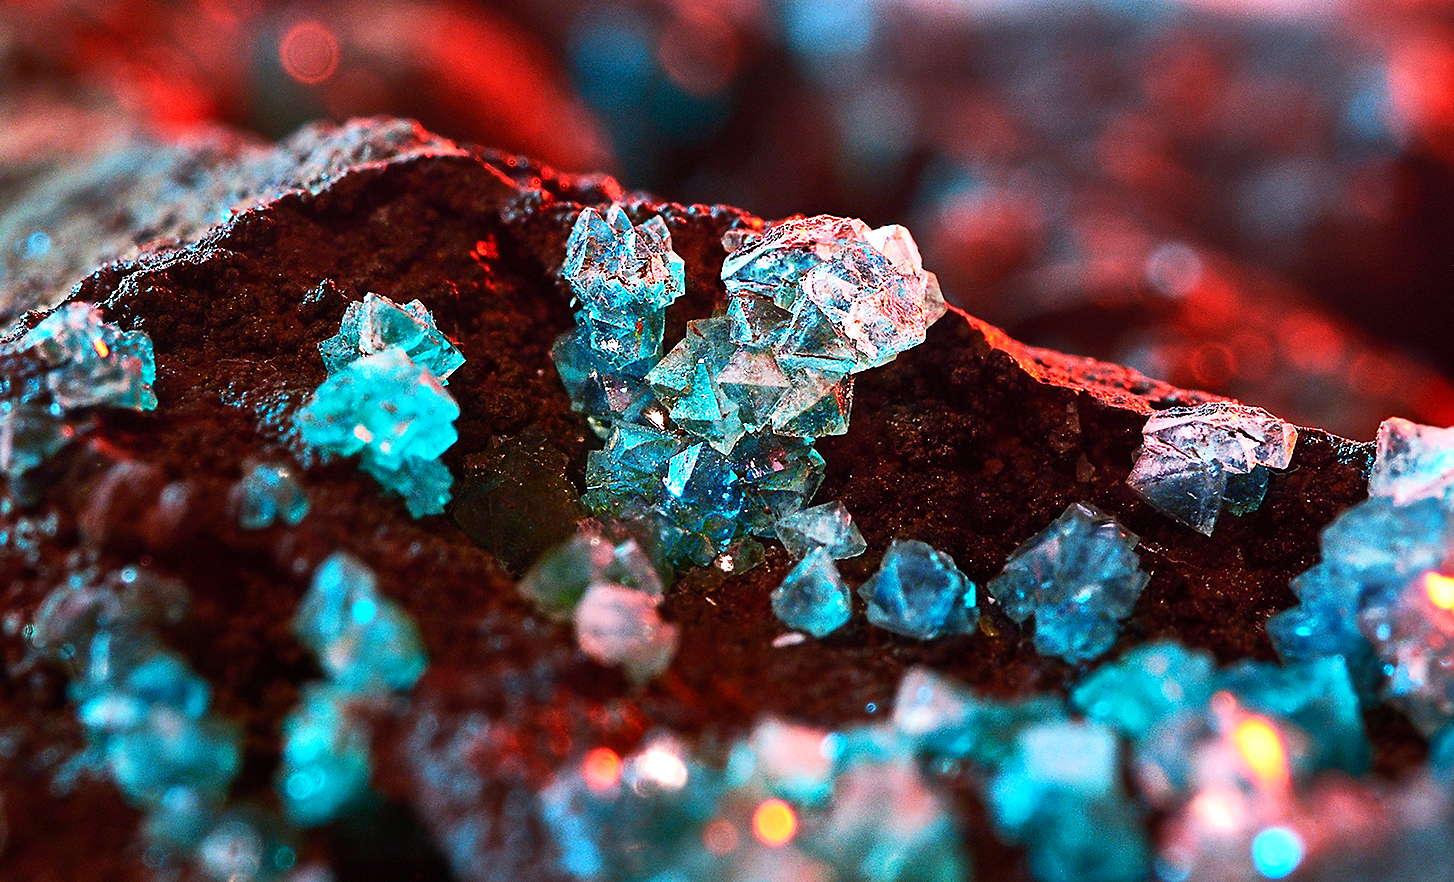 Immagine che mostra cristalli rossi, turchesi e azzurri